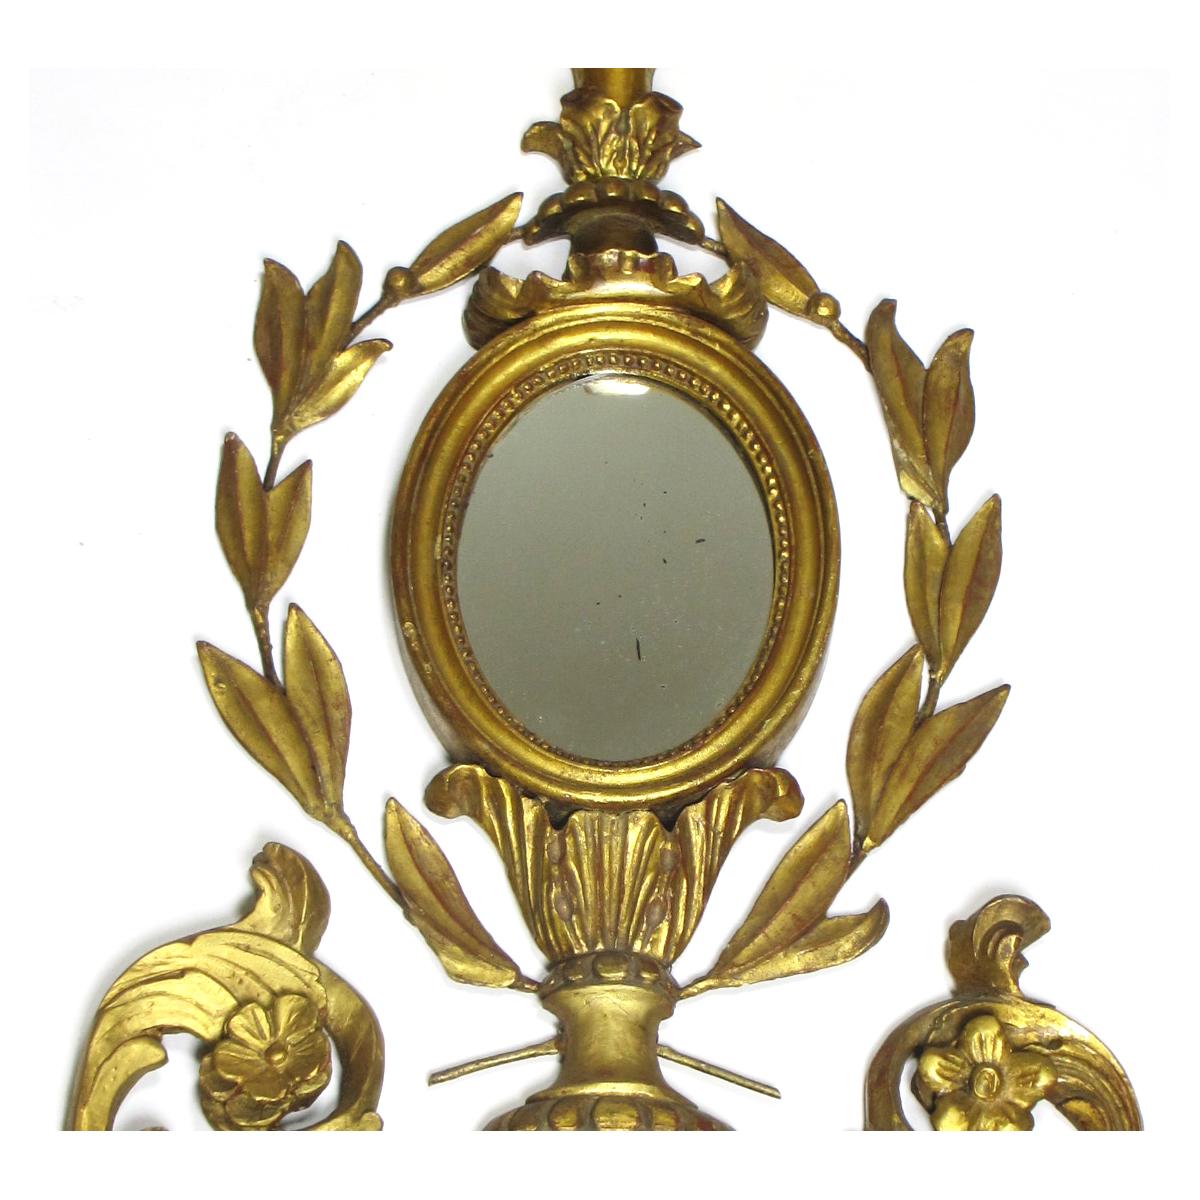 Un beau miroir d'applique (plafonnier) Girandle de style Louis XVI du 19e/20e siècle, en bois de tilleul sculpté. Le corps allongé sculpté est décoré de couronnes, de fleurs, de rayons de soleil et d'épis de faîtage sculptés en bois doré, au centre